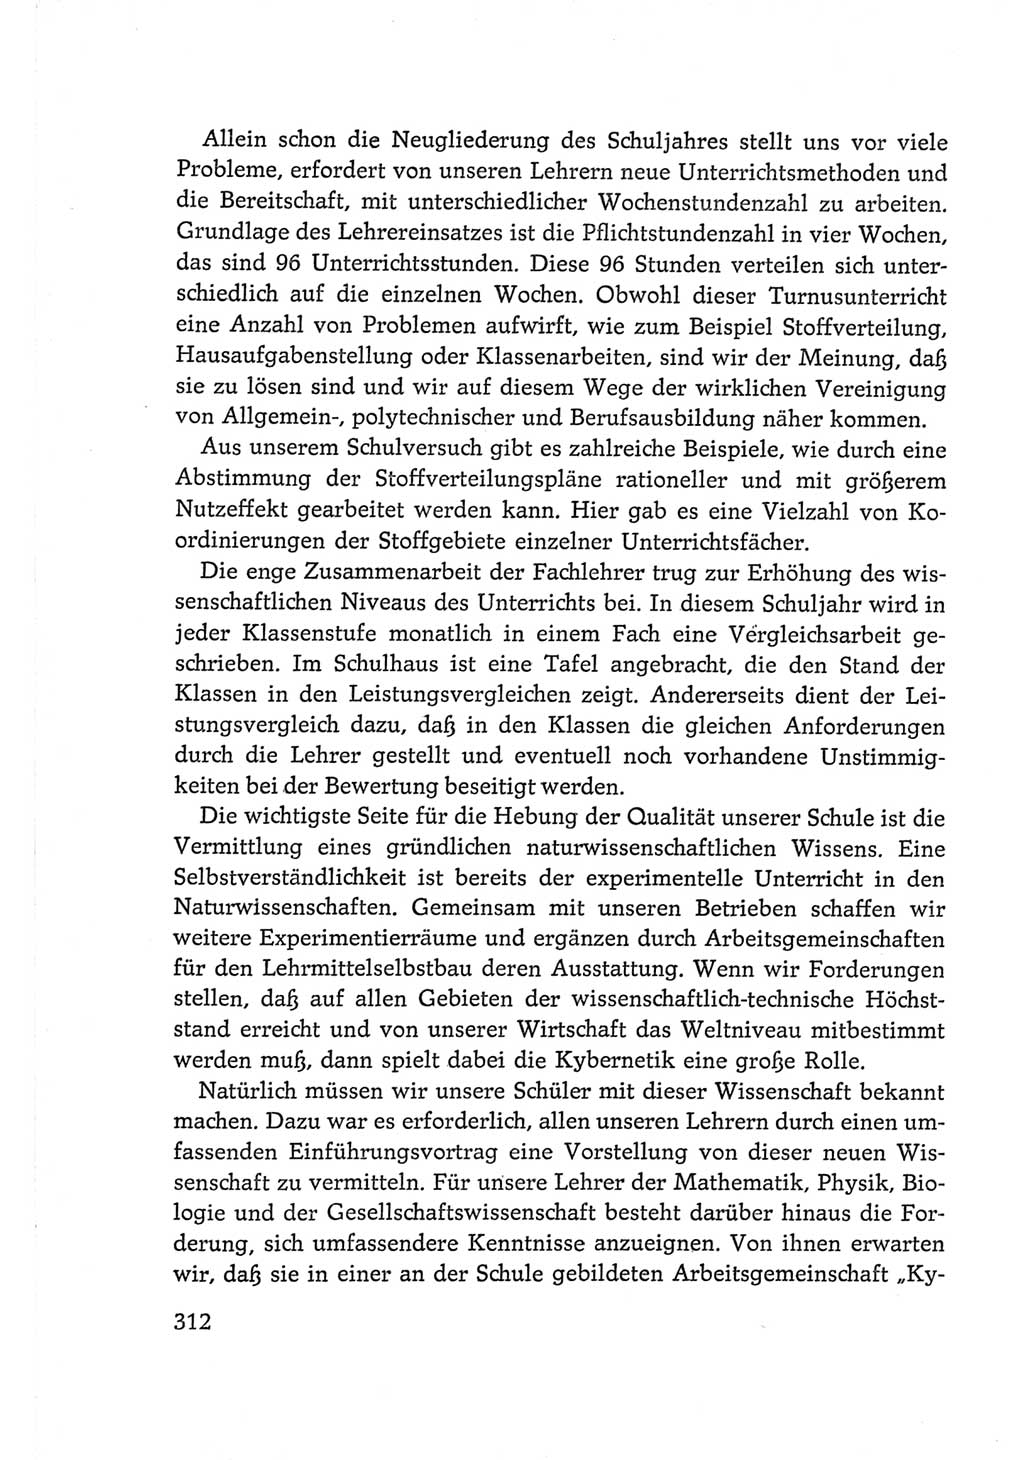 Protokoll der Verhandlungen des Ⅵ. Parteitages der Sozialistischen Einheitspartei Deutschlands (SED) [Deutsche Demokratische Republik (DDR)] 1963, Band Ⅲ, Seite 312 (Prot. Verh. Ⅵ. PT SED DDR 1963, Bd. Ⅲ, S. 312)